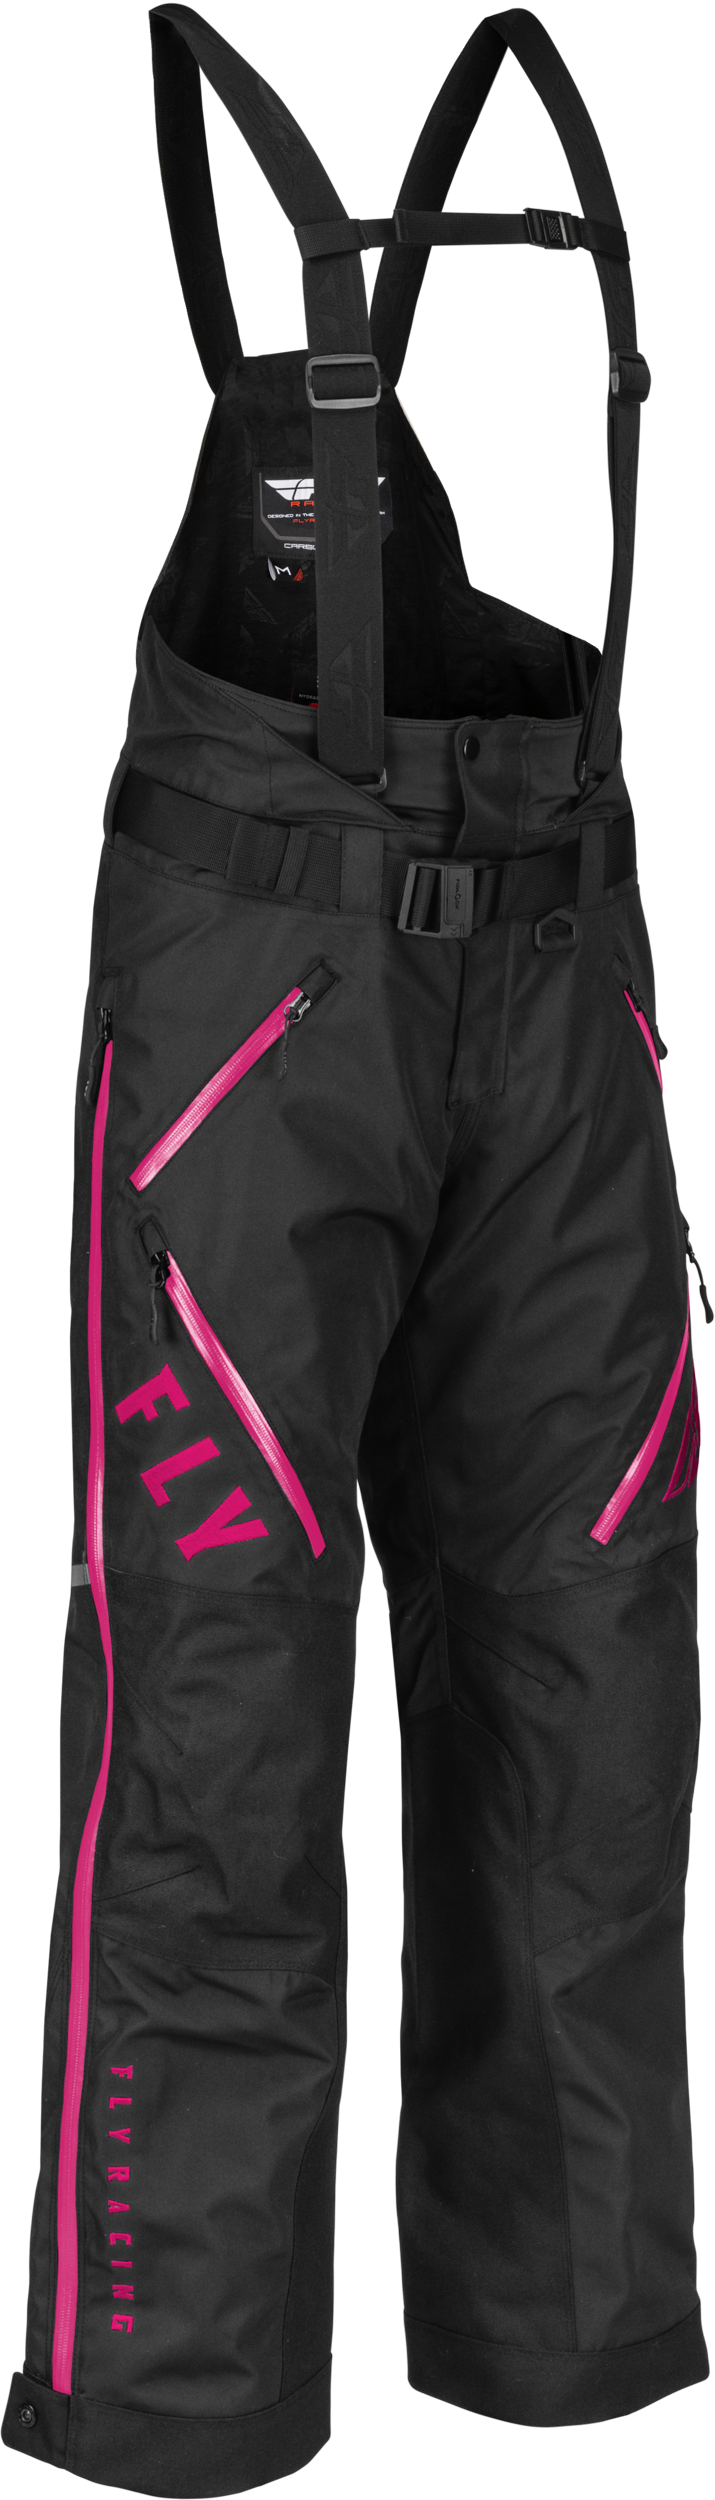 FLY RACING Women's Carbon Bib Black/Pink Xl 470-4507X